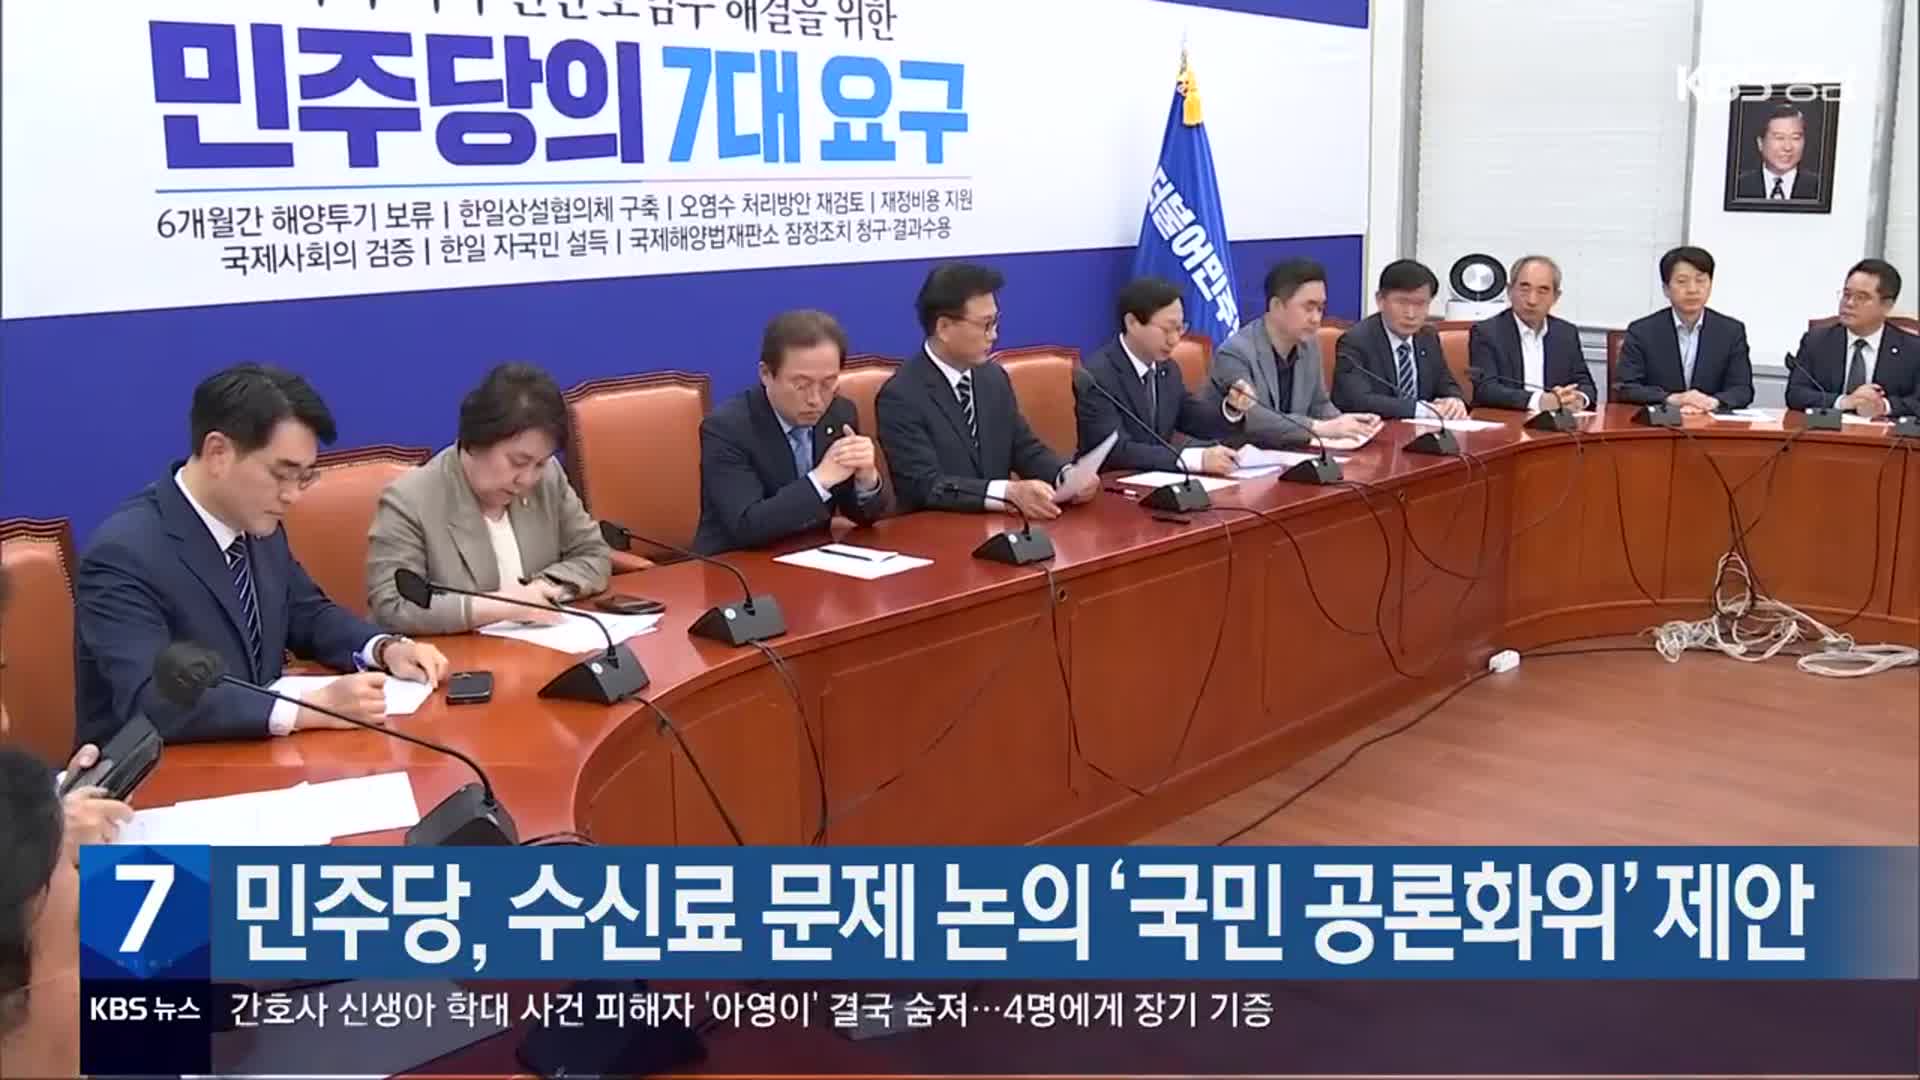 민주당, 수신료 문제 논의 ‘국민 공론화위’ 제안